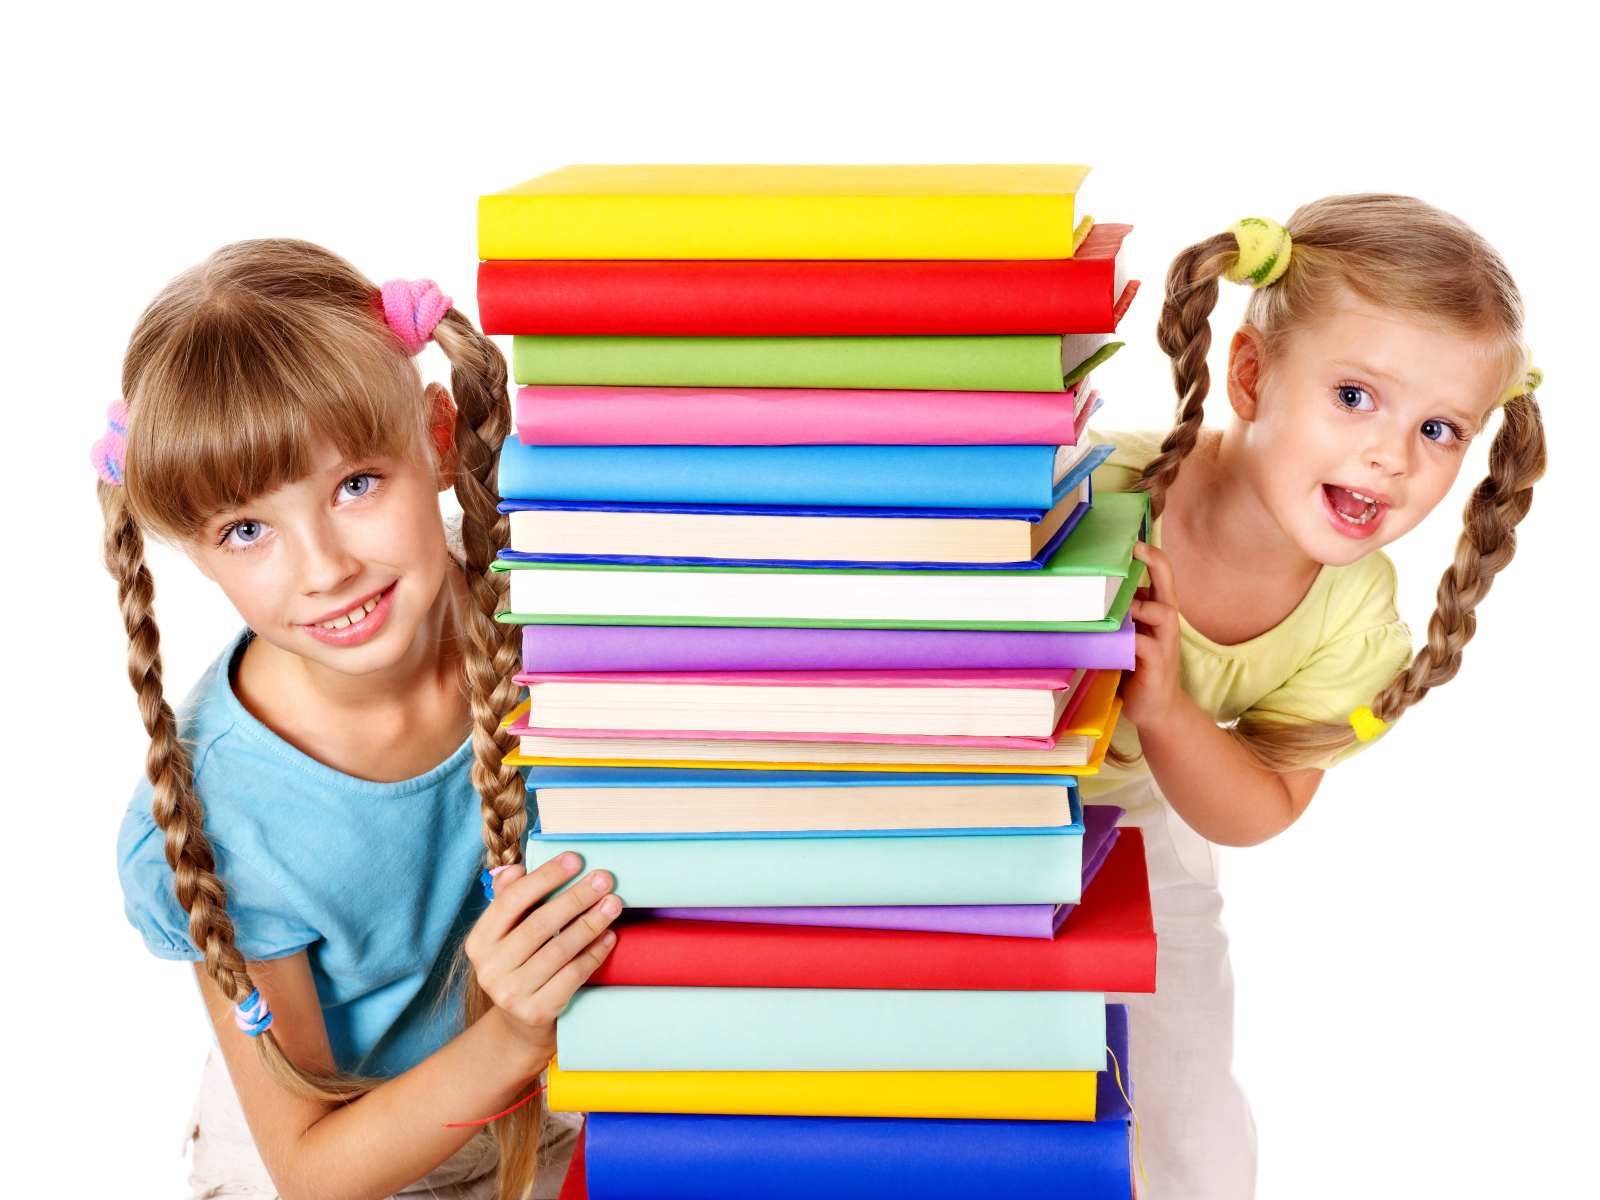 Две маленькие девочки с разноцветными книгами на белом фоне